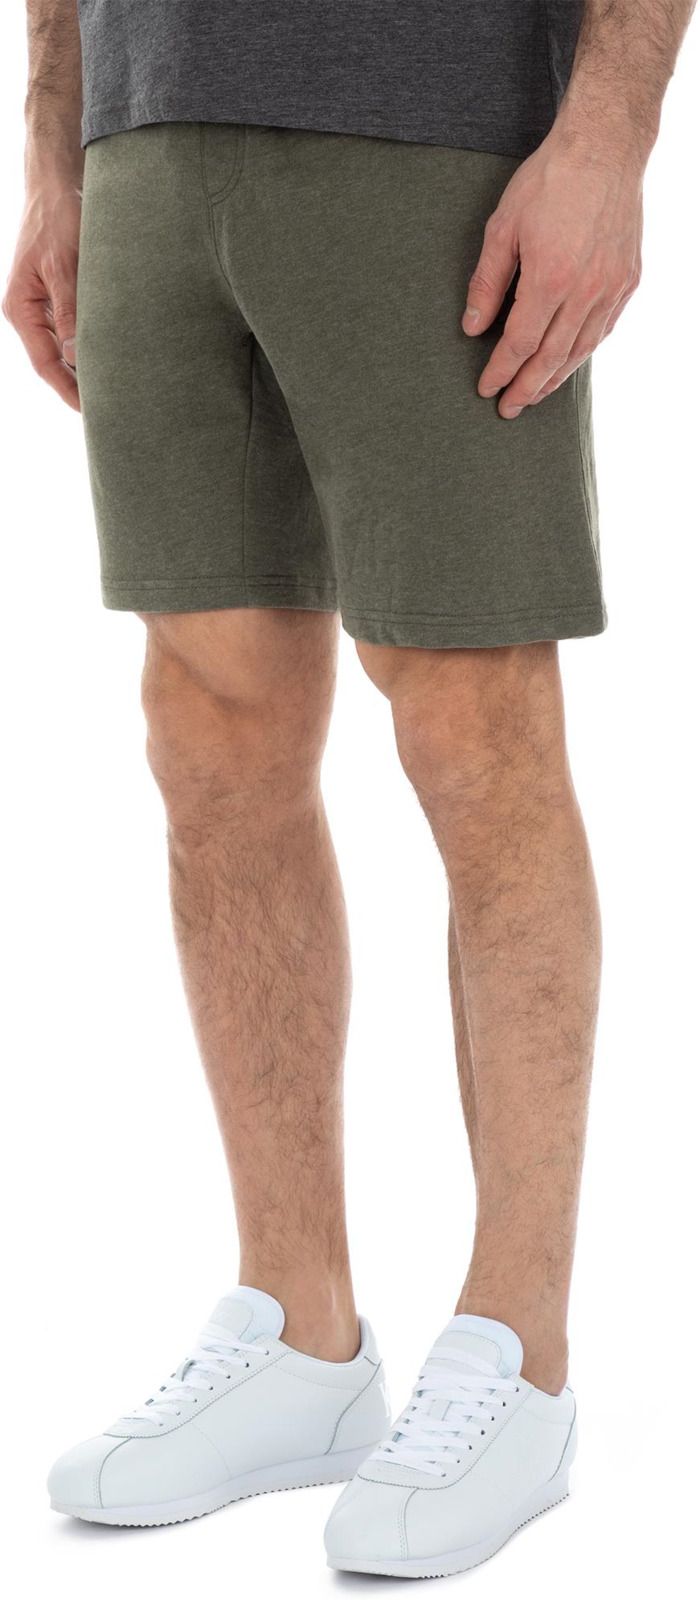   Kappa Men's Shorts, : -. 304IDQ0-5U.  XL (52)